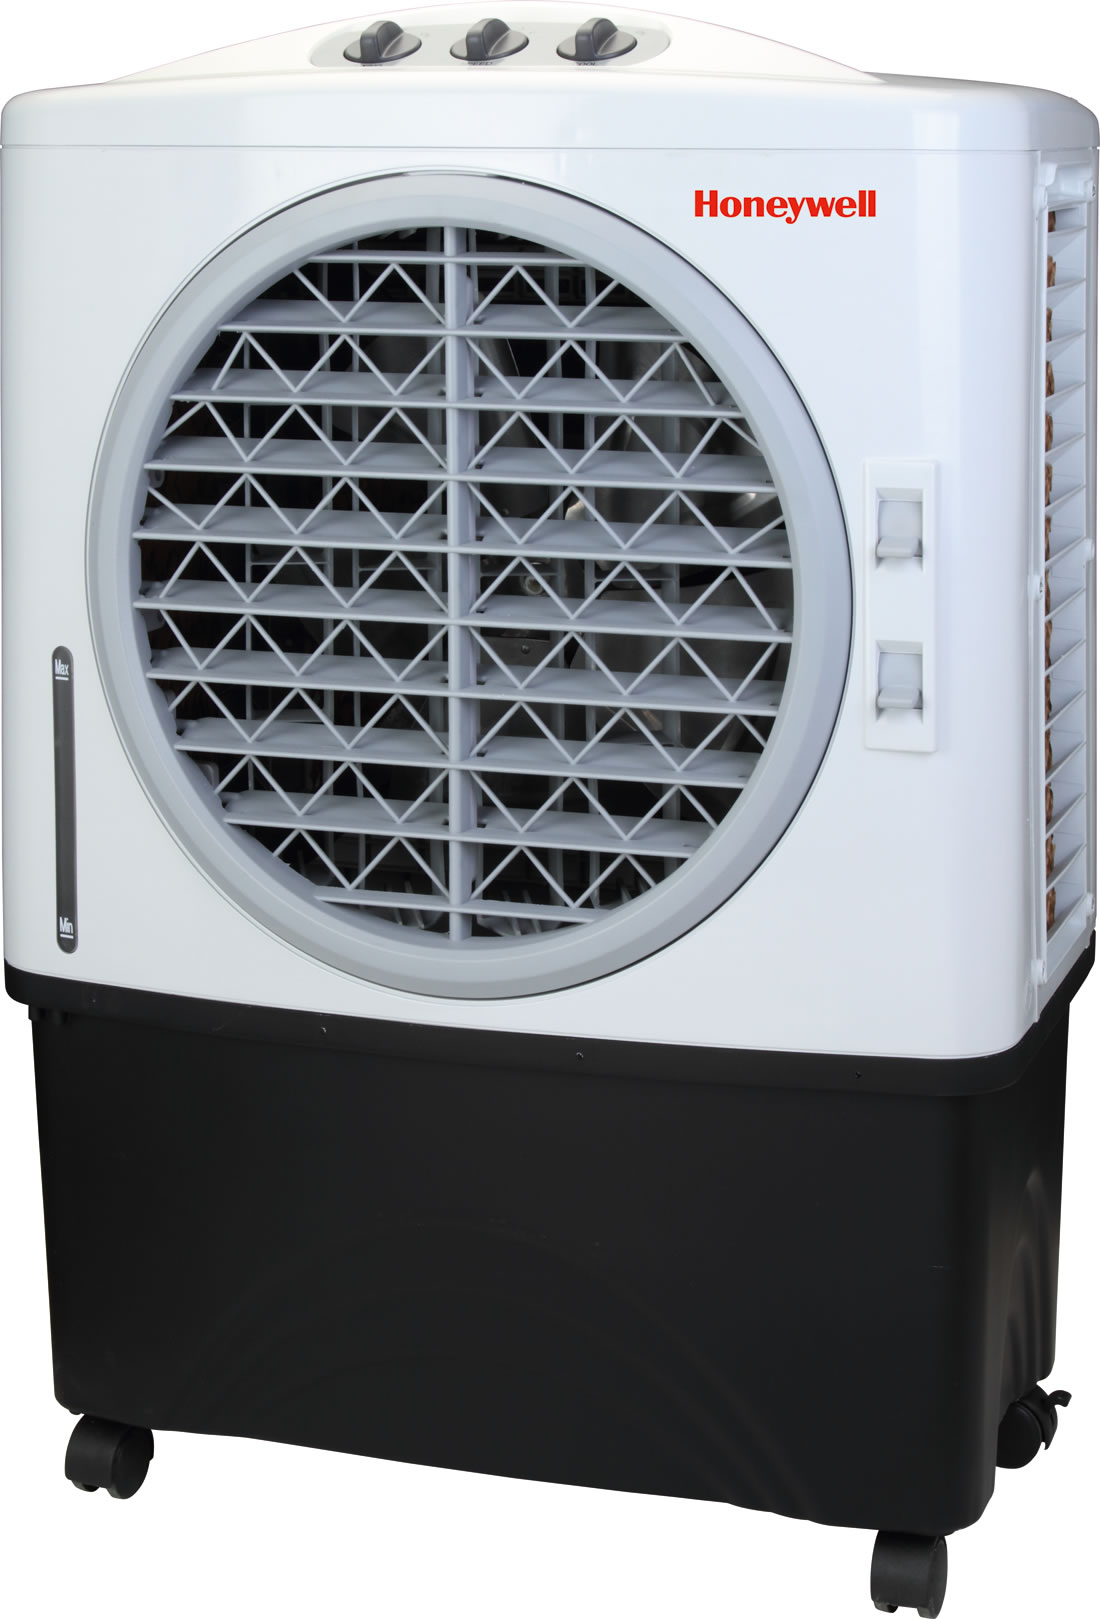 Cfm Indoor Outdoor Evaporative Air Cooler Swamp Cooler With